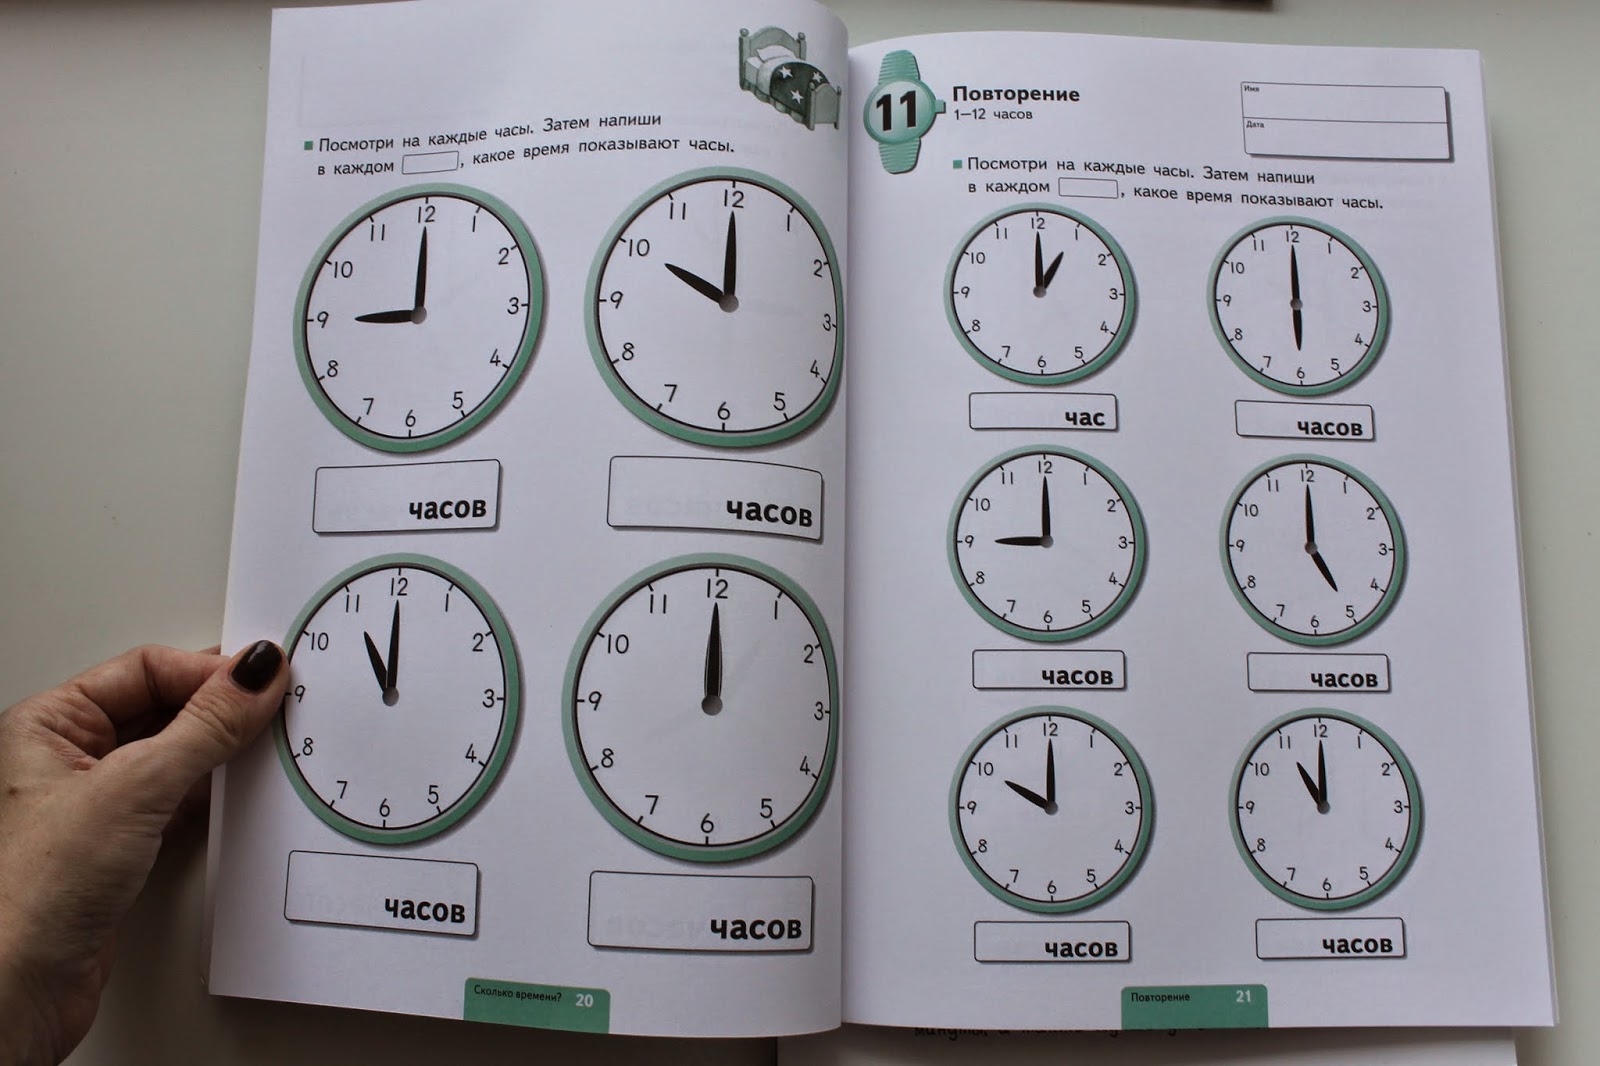 Установи время по часовому. Часы повторение. Определяем время по часам. Повторение часов и минут. Карточки с часами для определения времени.